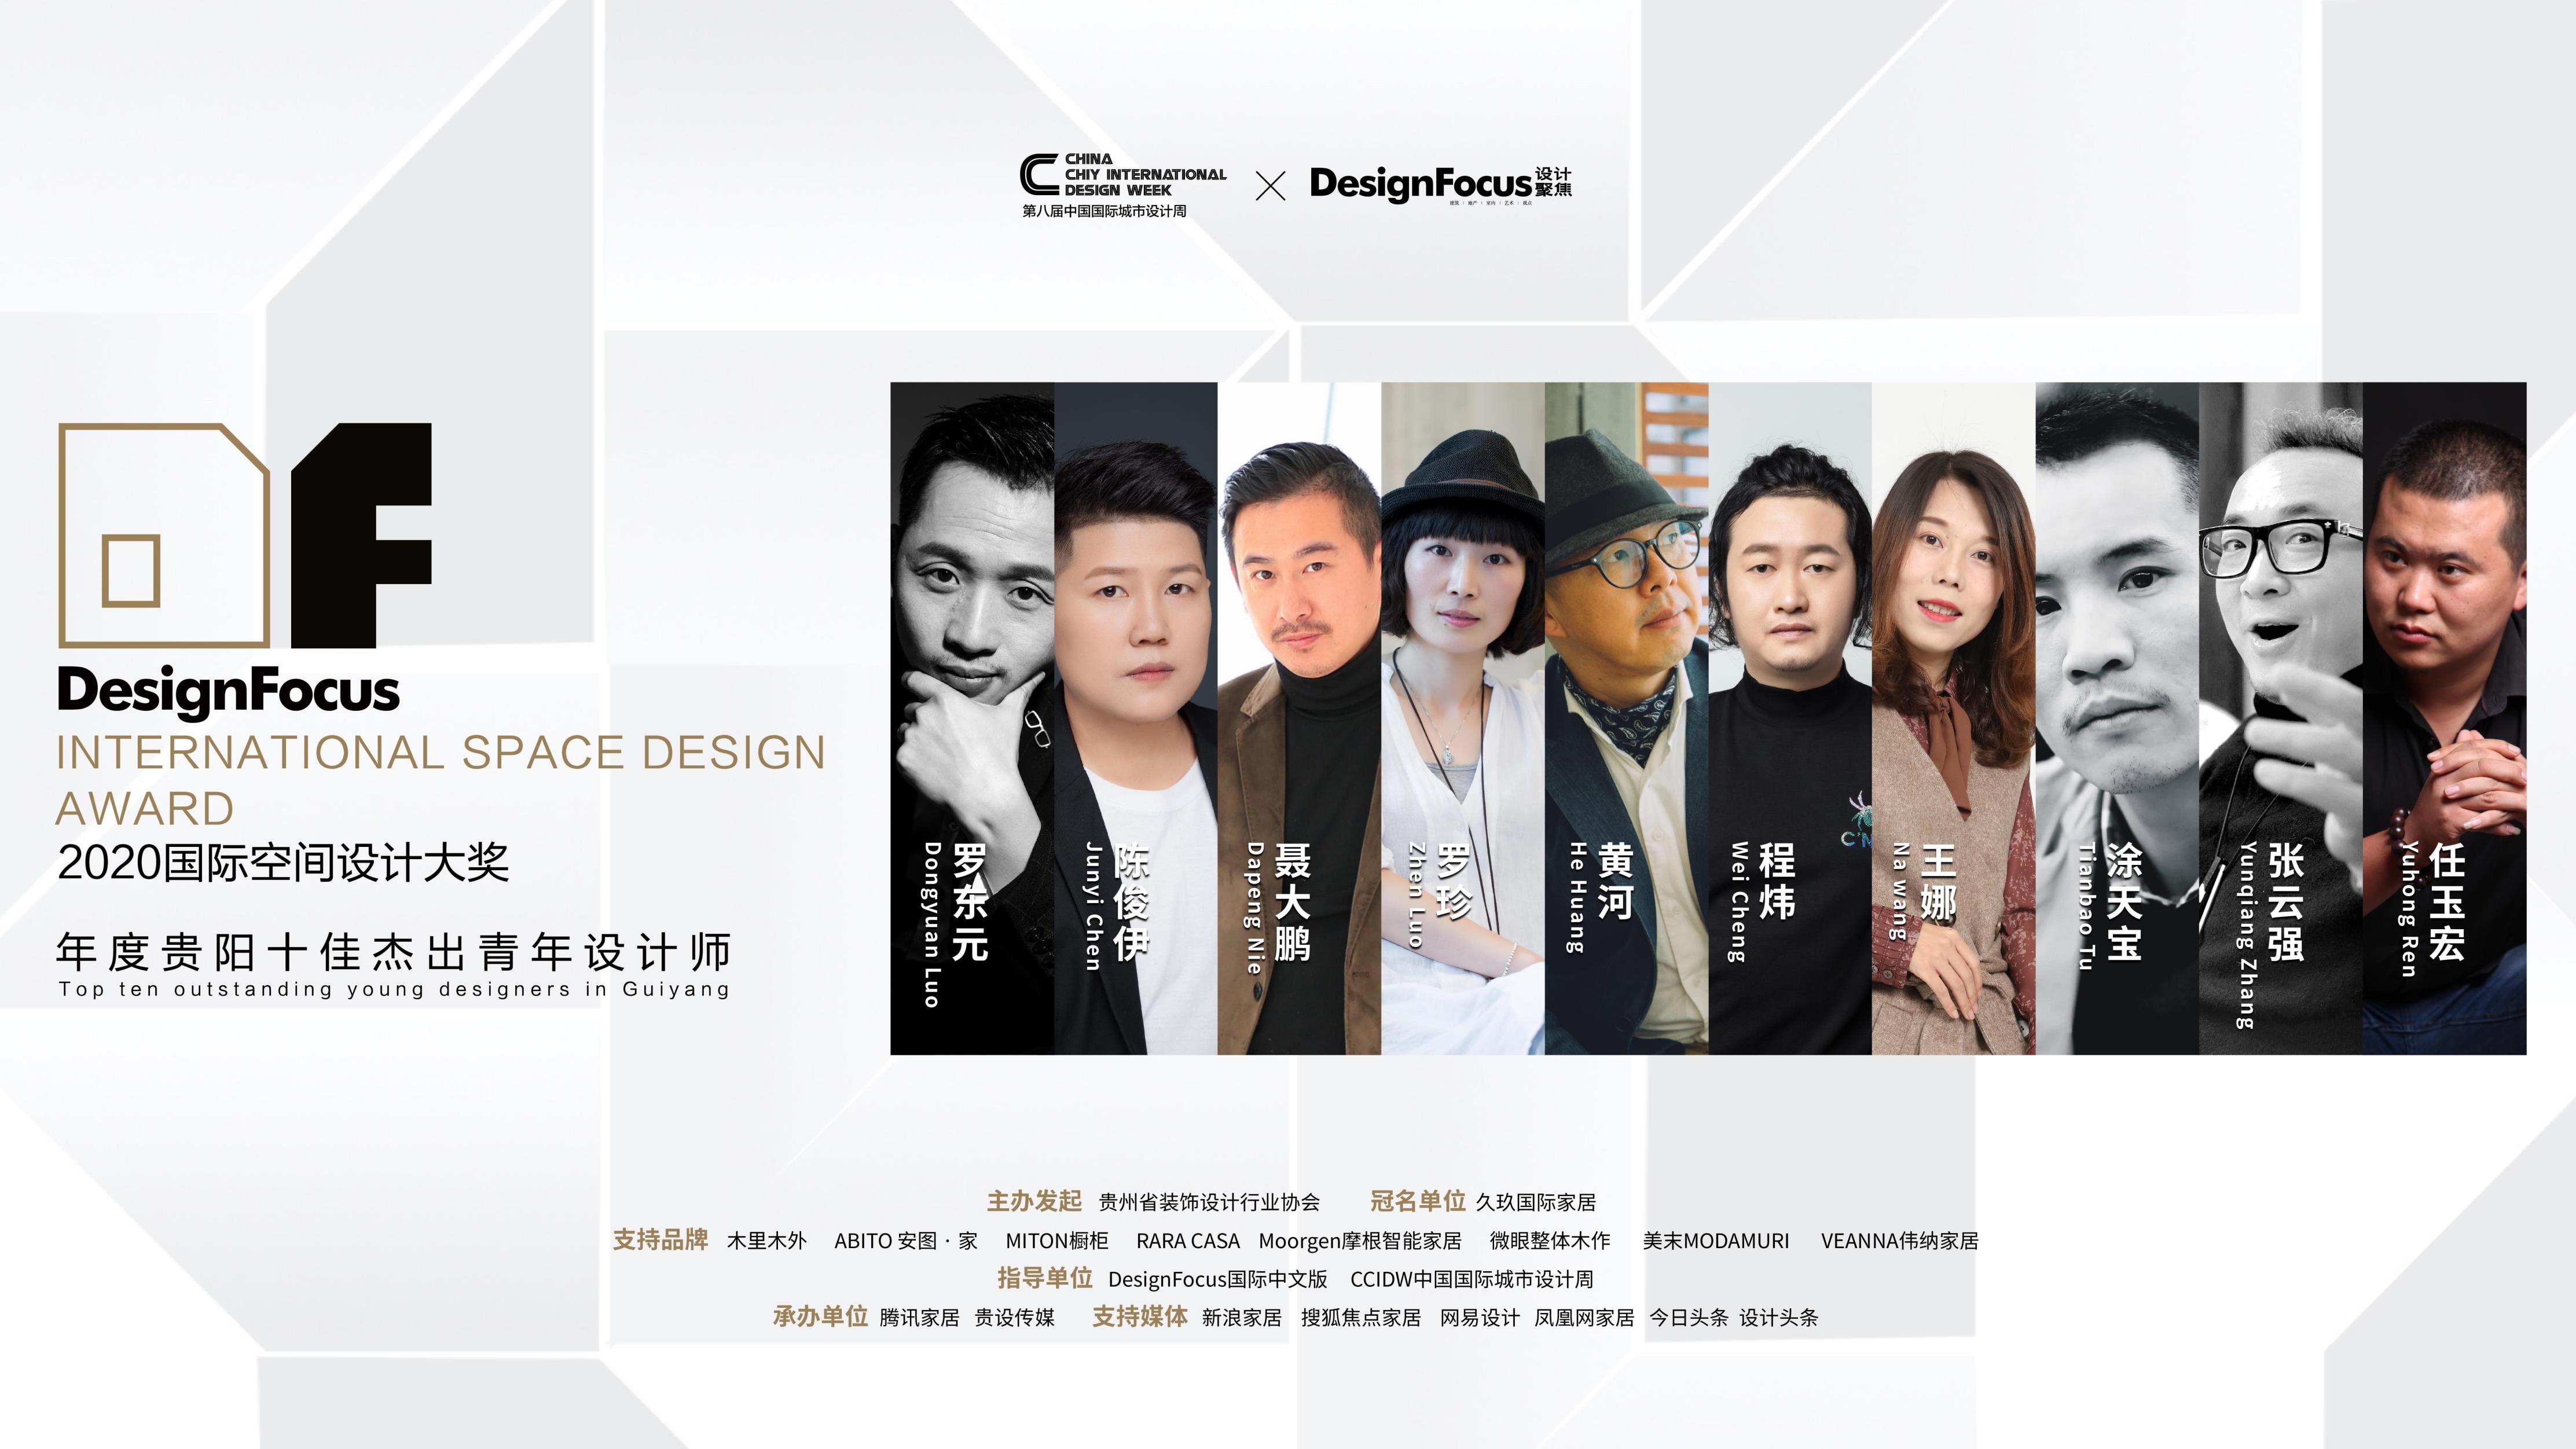 DesignFocus2020国际空间设计大奖由建筑、室内设计行业专业杂志《Design Focus》国际中文版、CCIDW中国国际城市设计周共同发起，联合包括...